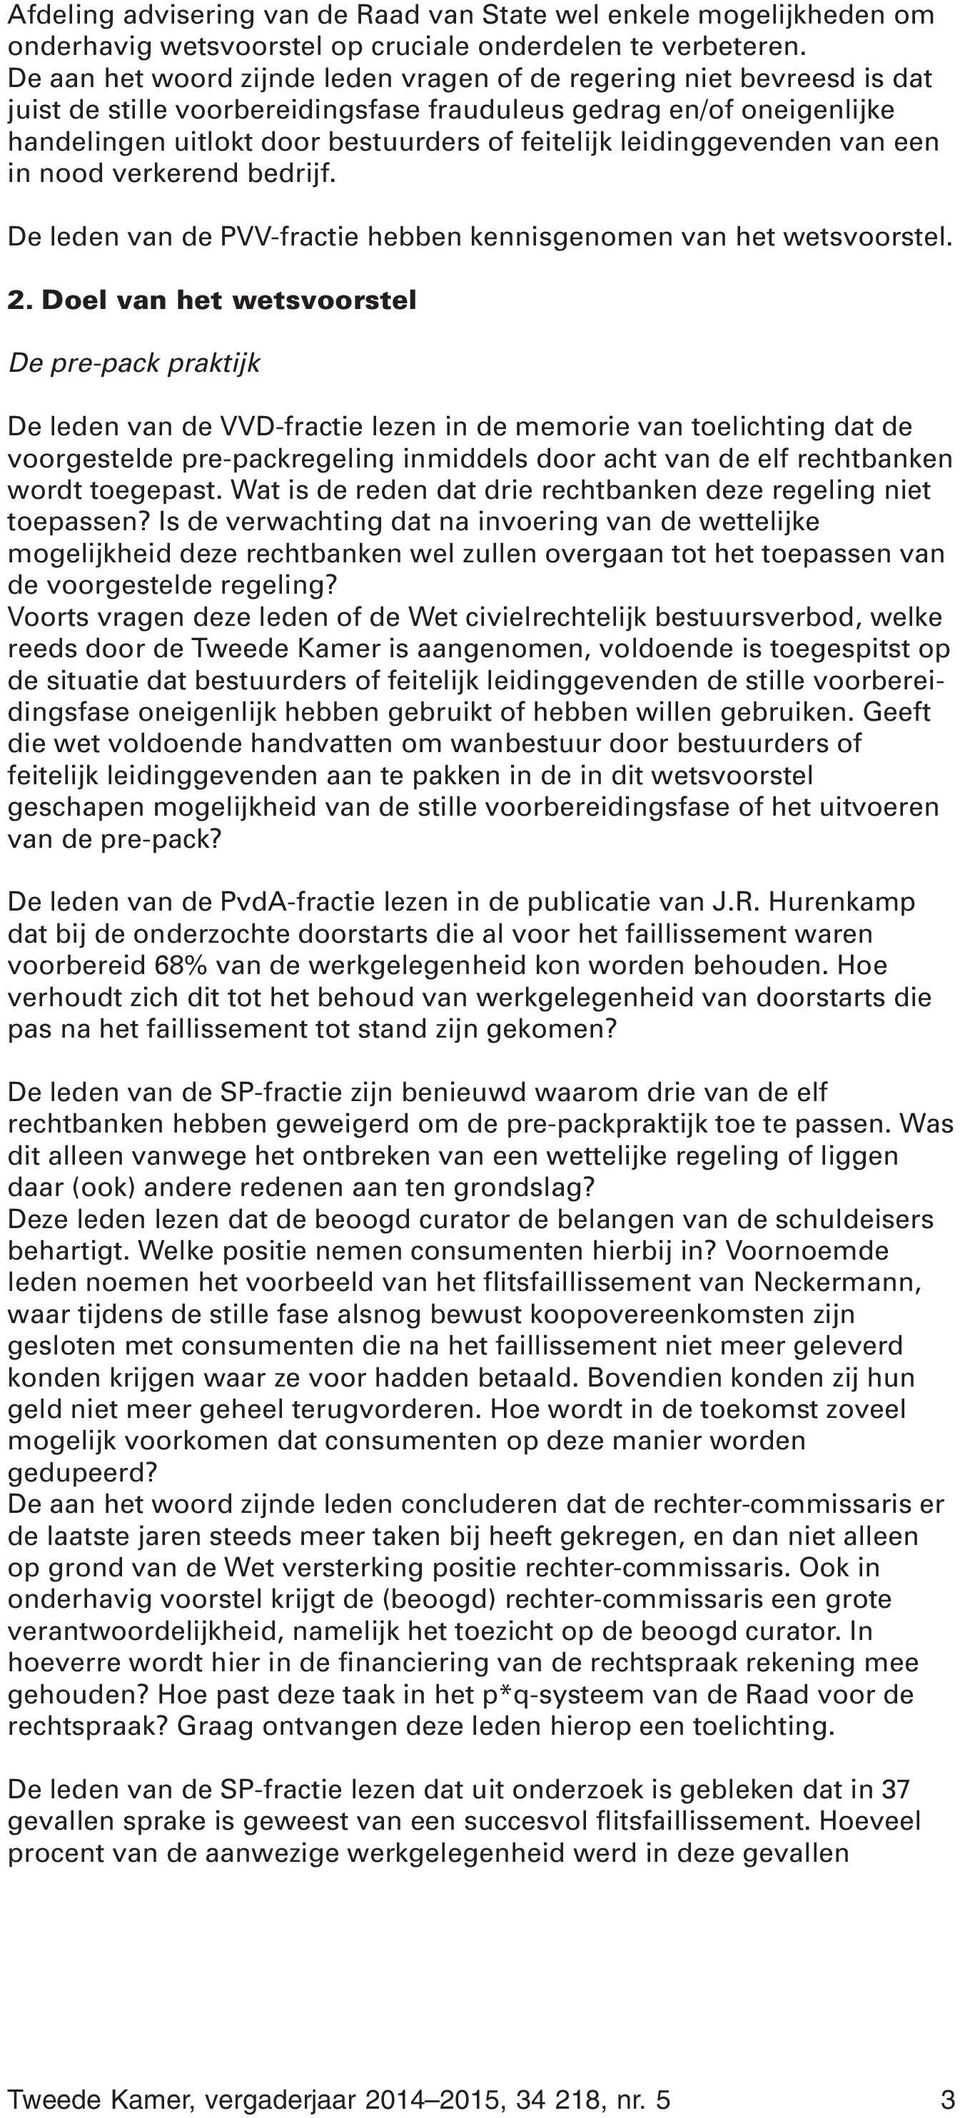 leidinggevenden van een in nood verkerend bedrijf. De leden van de PVV-fractie hebben kennisgenomen van het wetsvoorstel. 2.